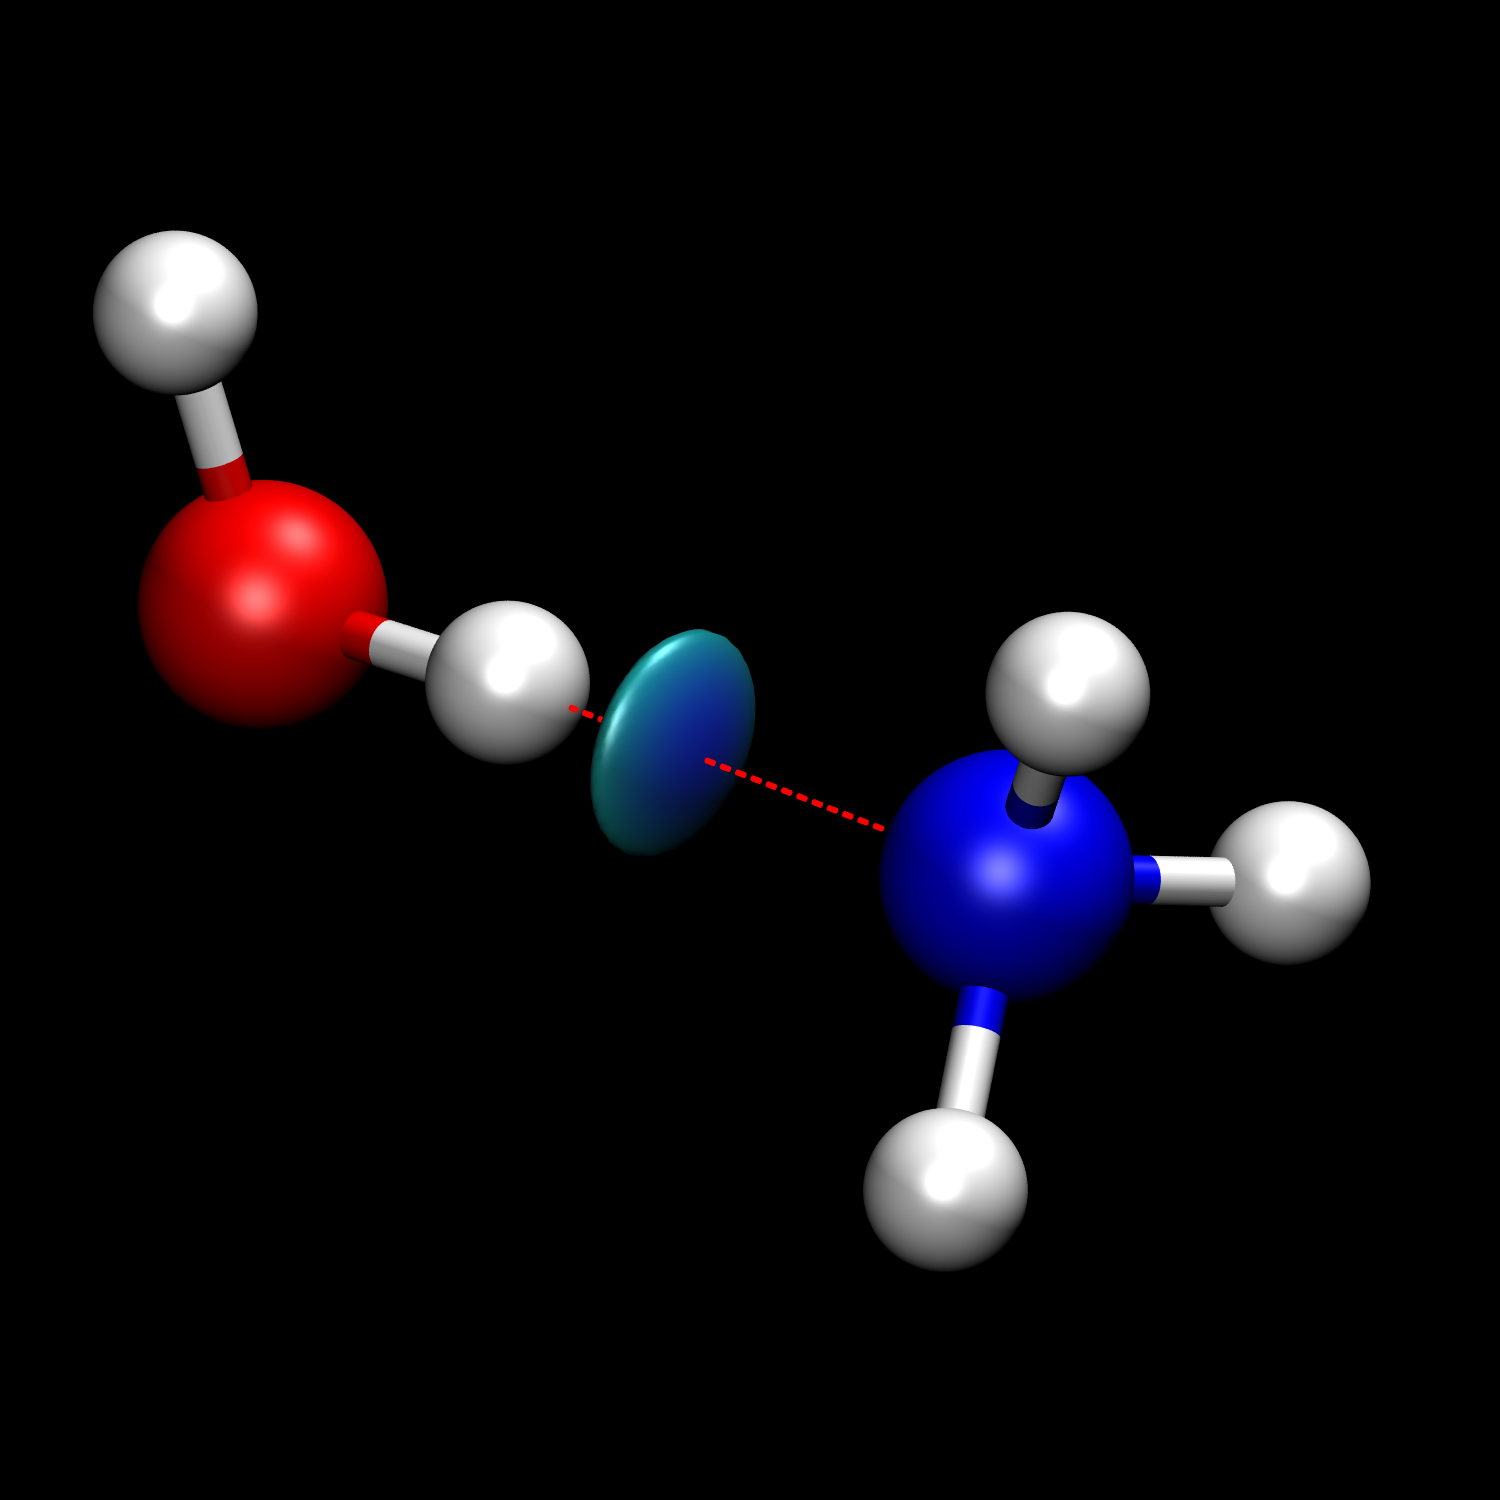 氨分子氢键图图片